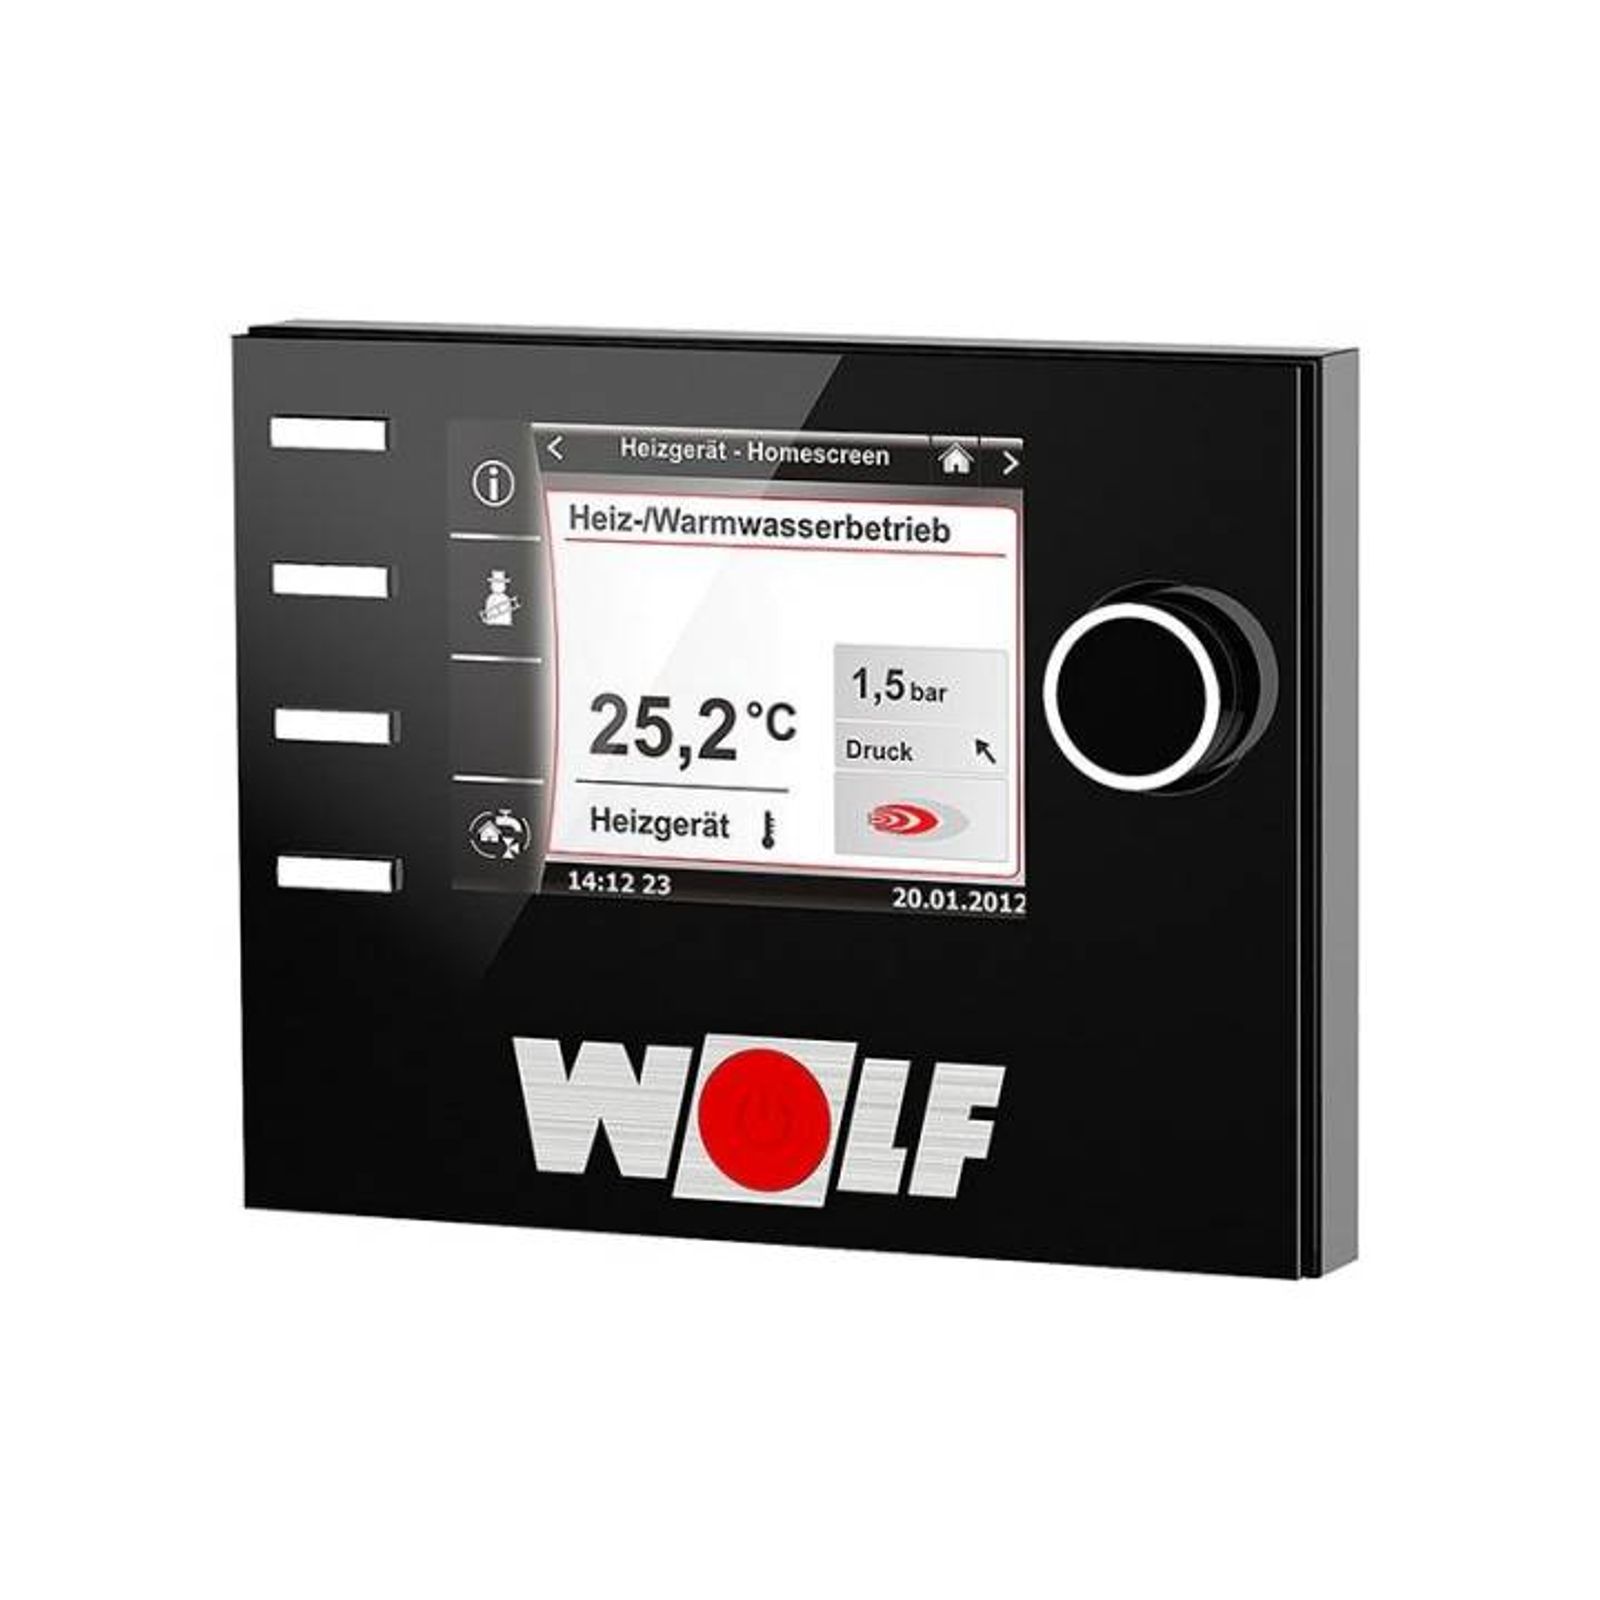 Wolf Gas-Brennwert 24 kW Kompaktheizzentrale CGS-2-24-200L